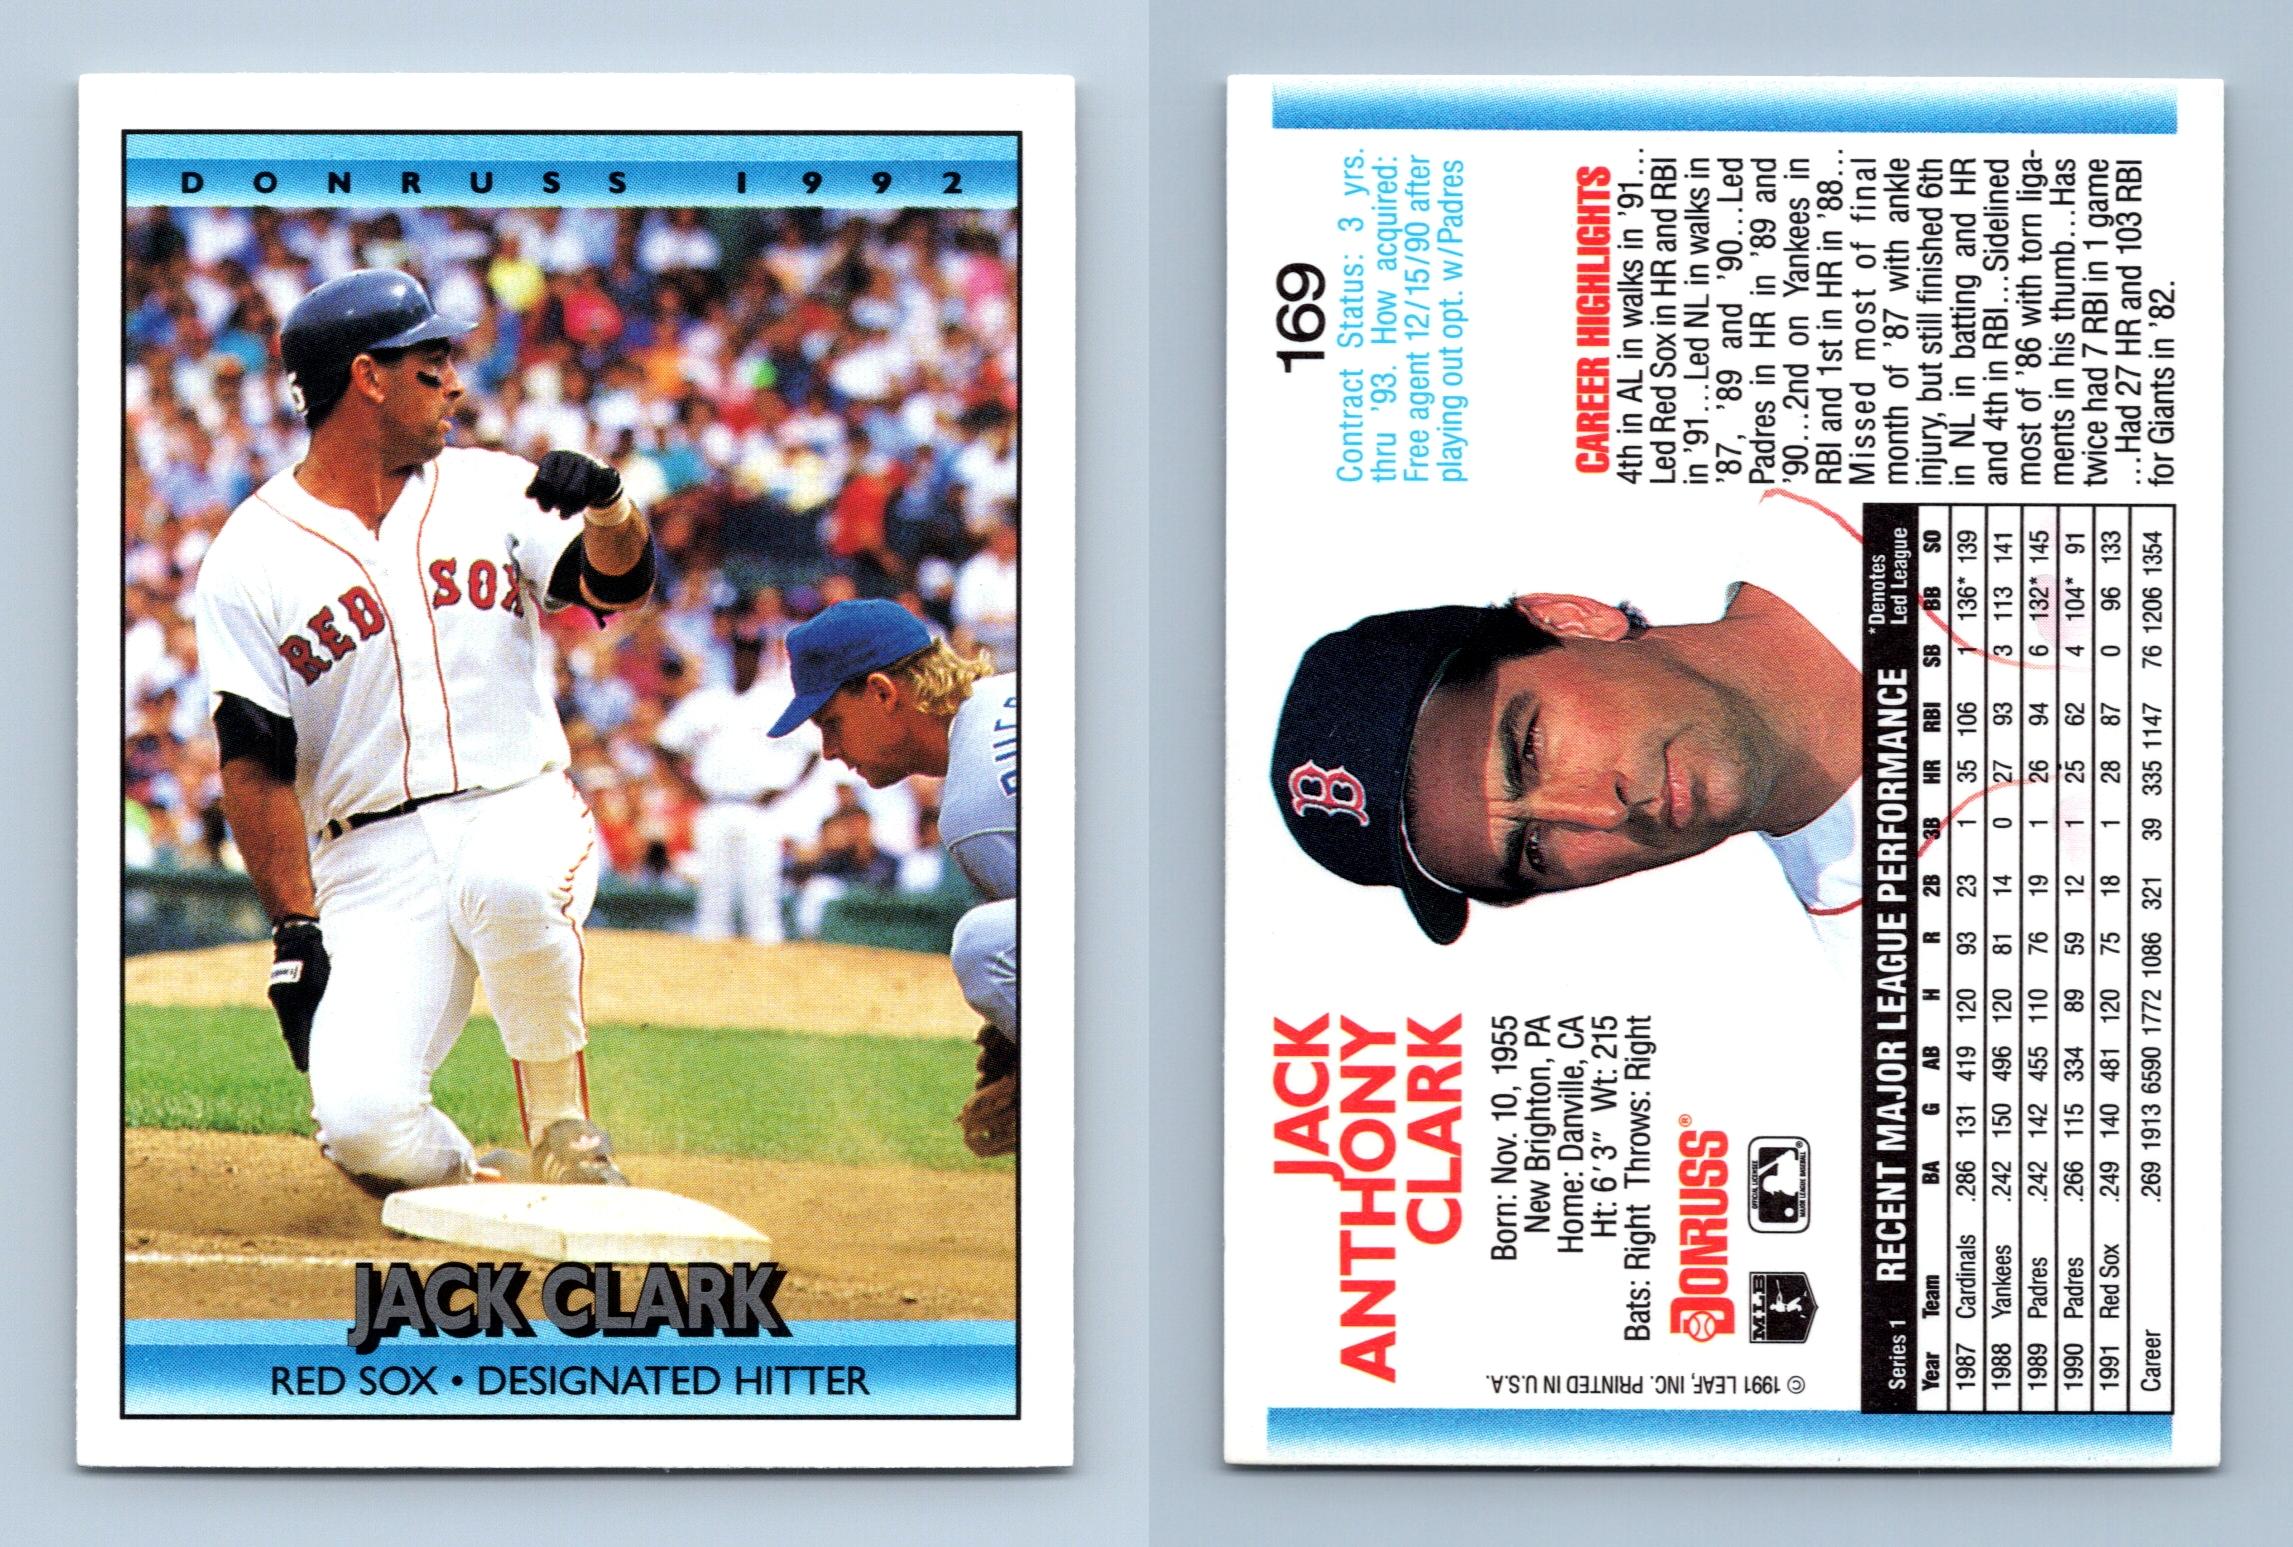 Jay Buhner - Mariners #61 Donruss 1992 Baseball Trading Card